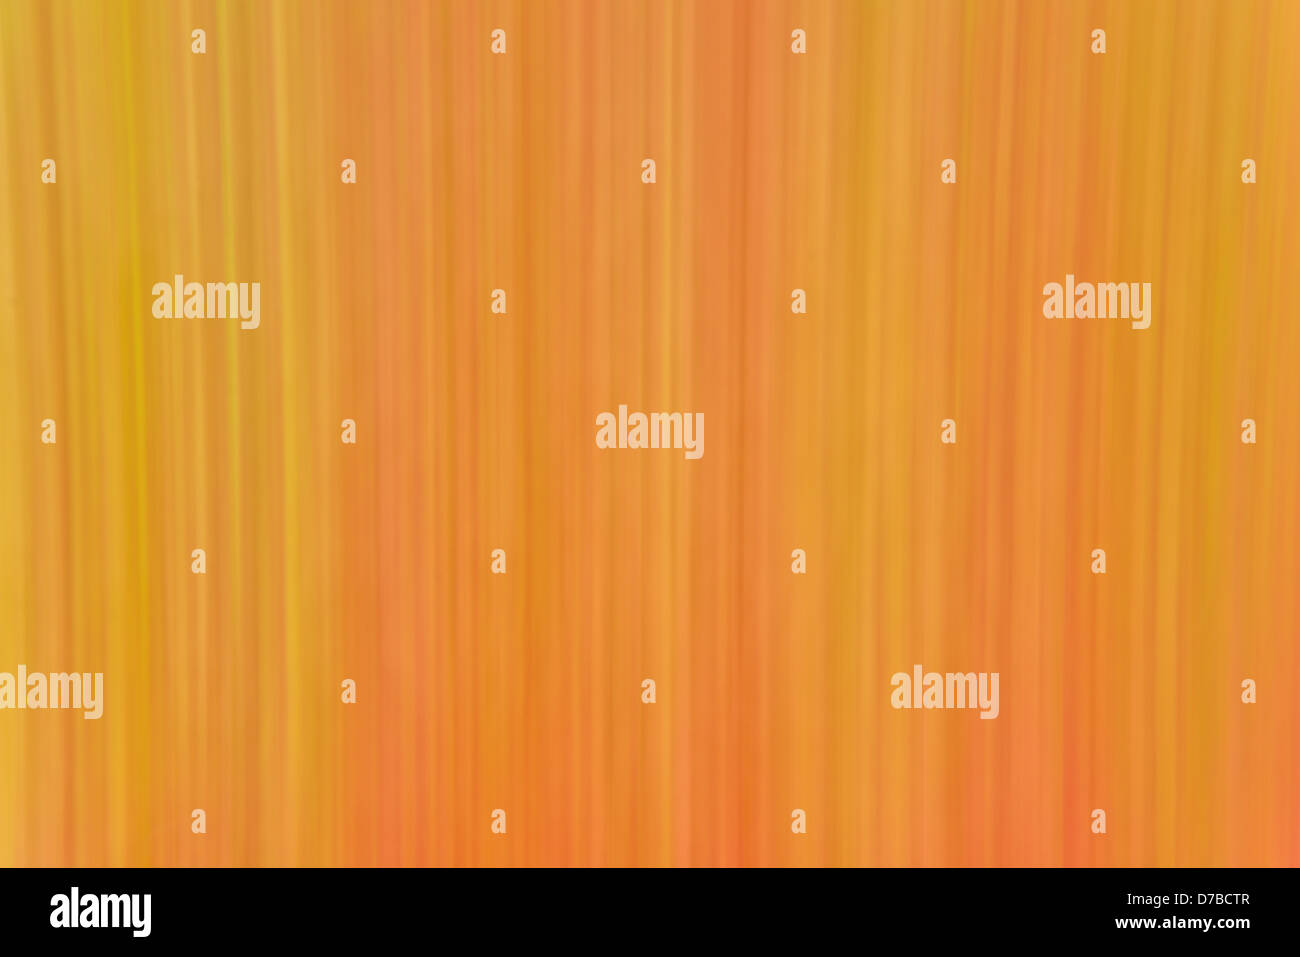 Abstract caldo con sfondo arancione verticale in funzione delle linee. Foto Stock